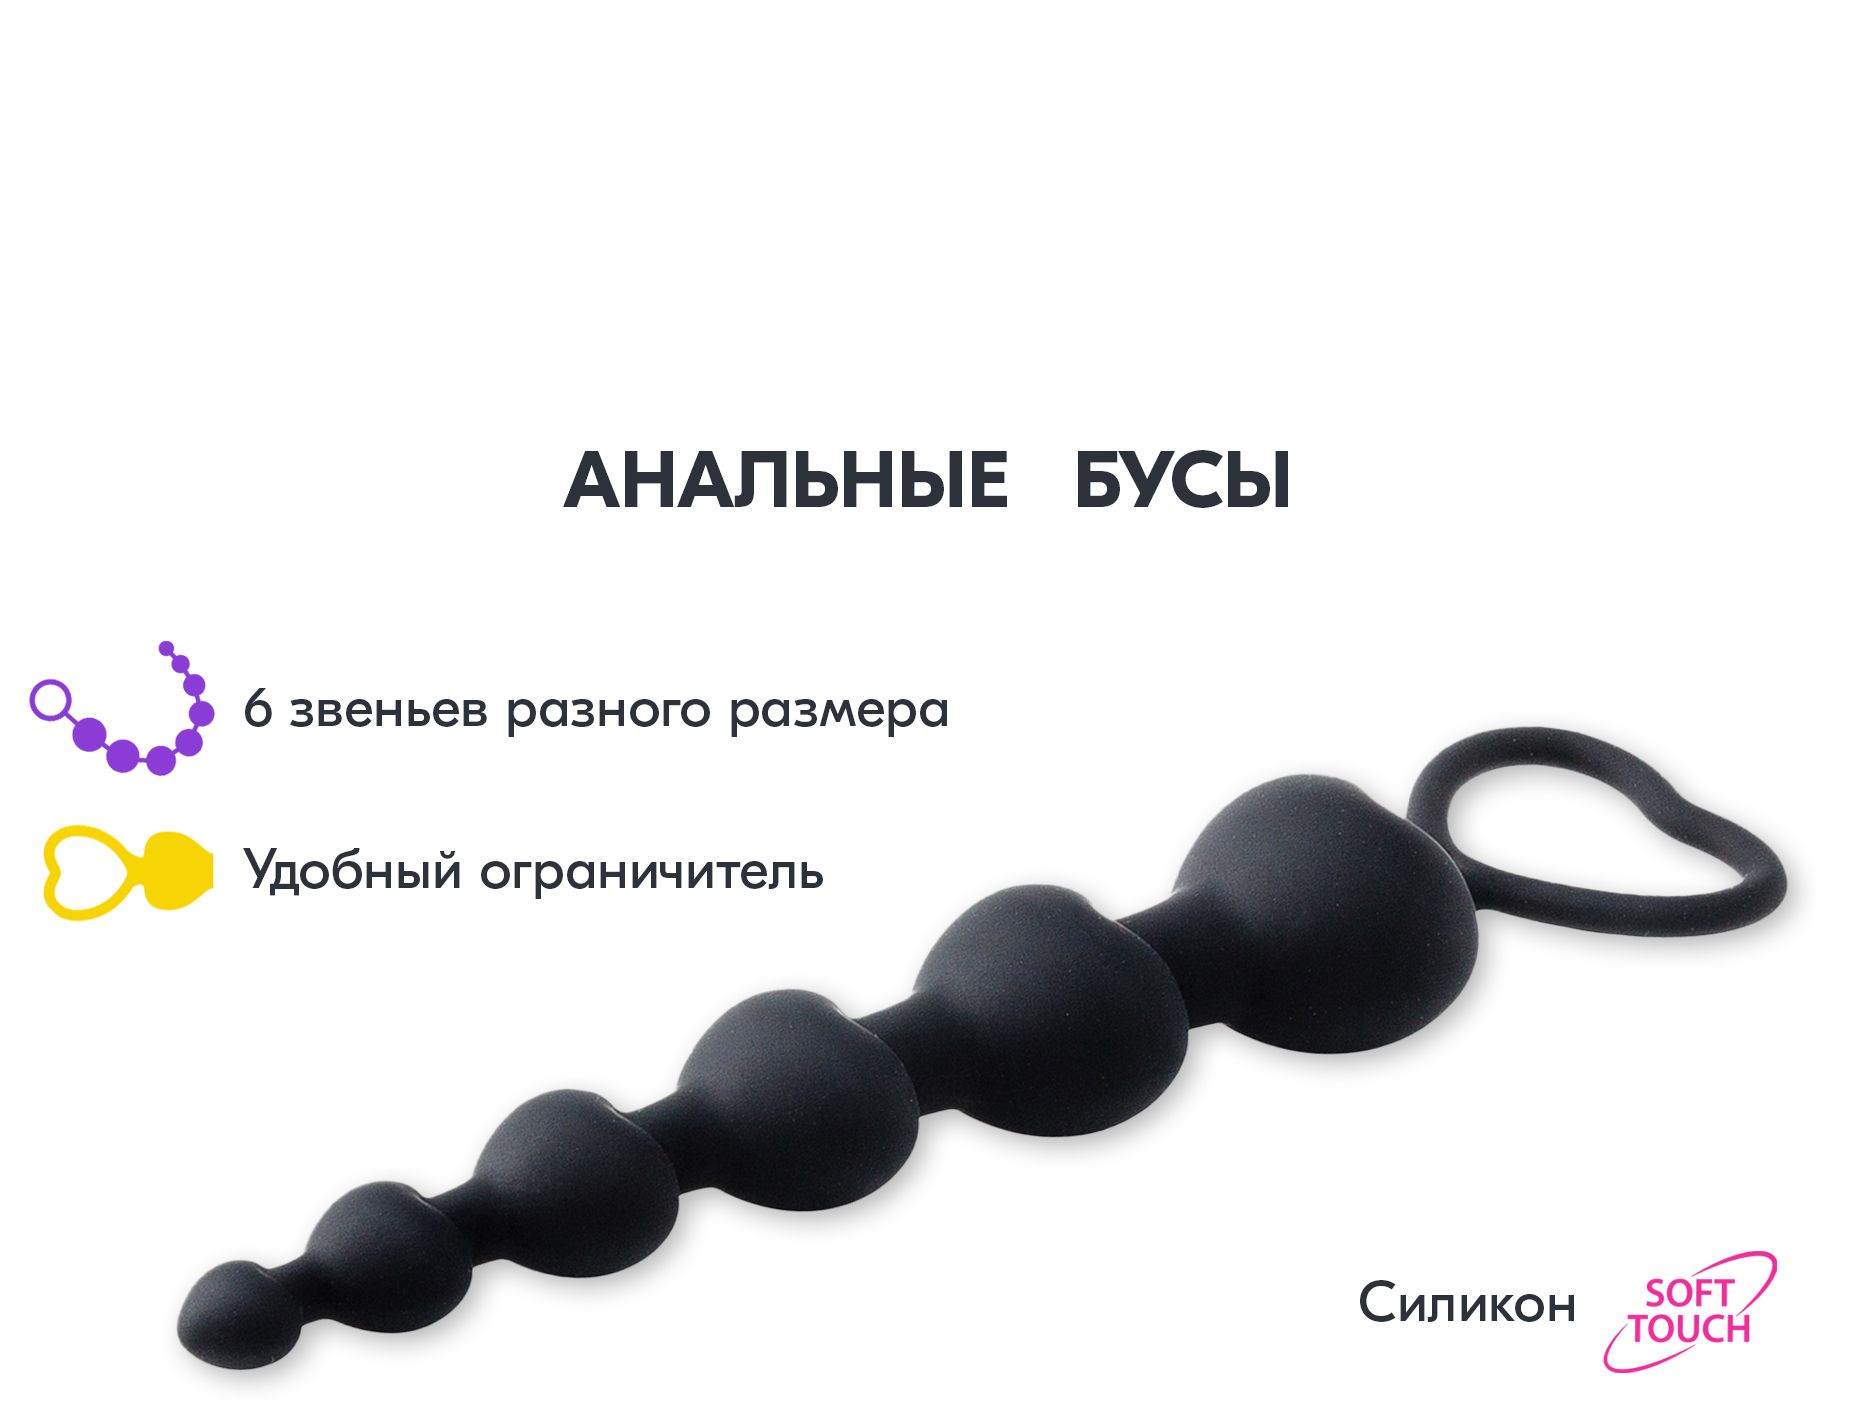 Анальные шарики — что это, как использовать - секс-шоп Казанова